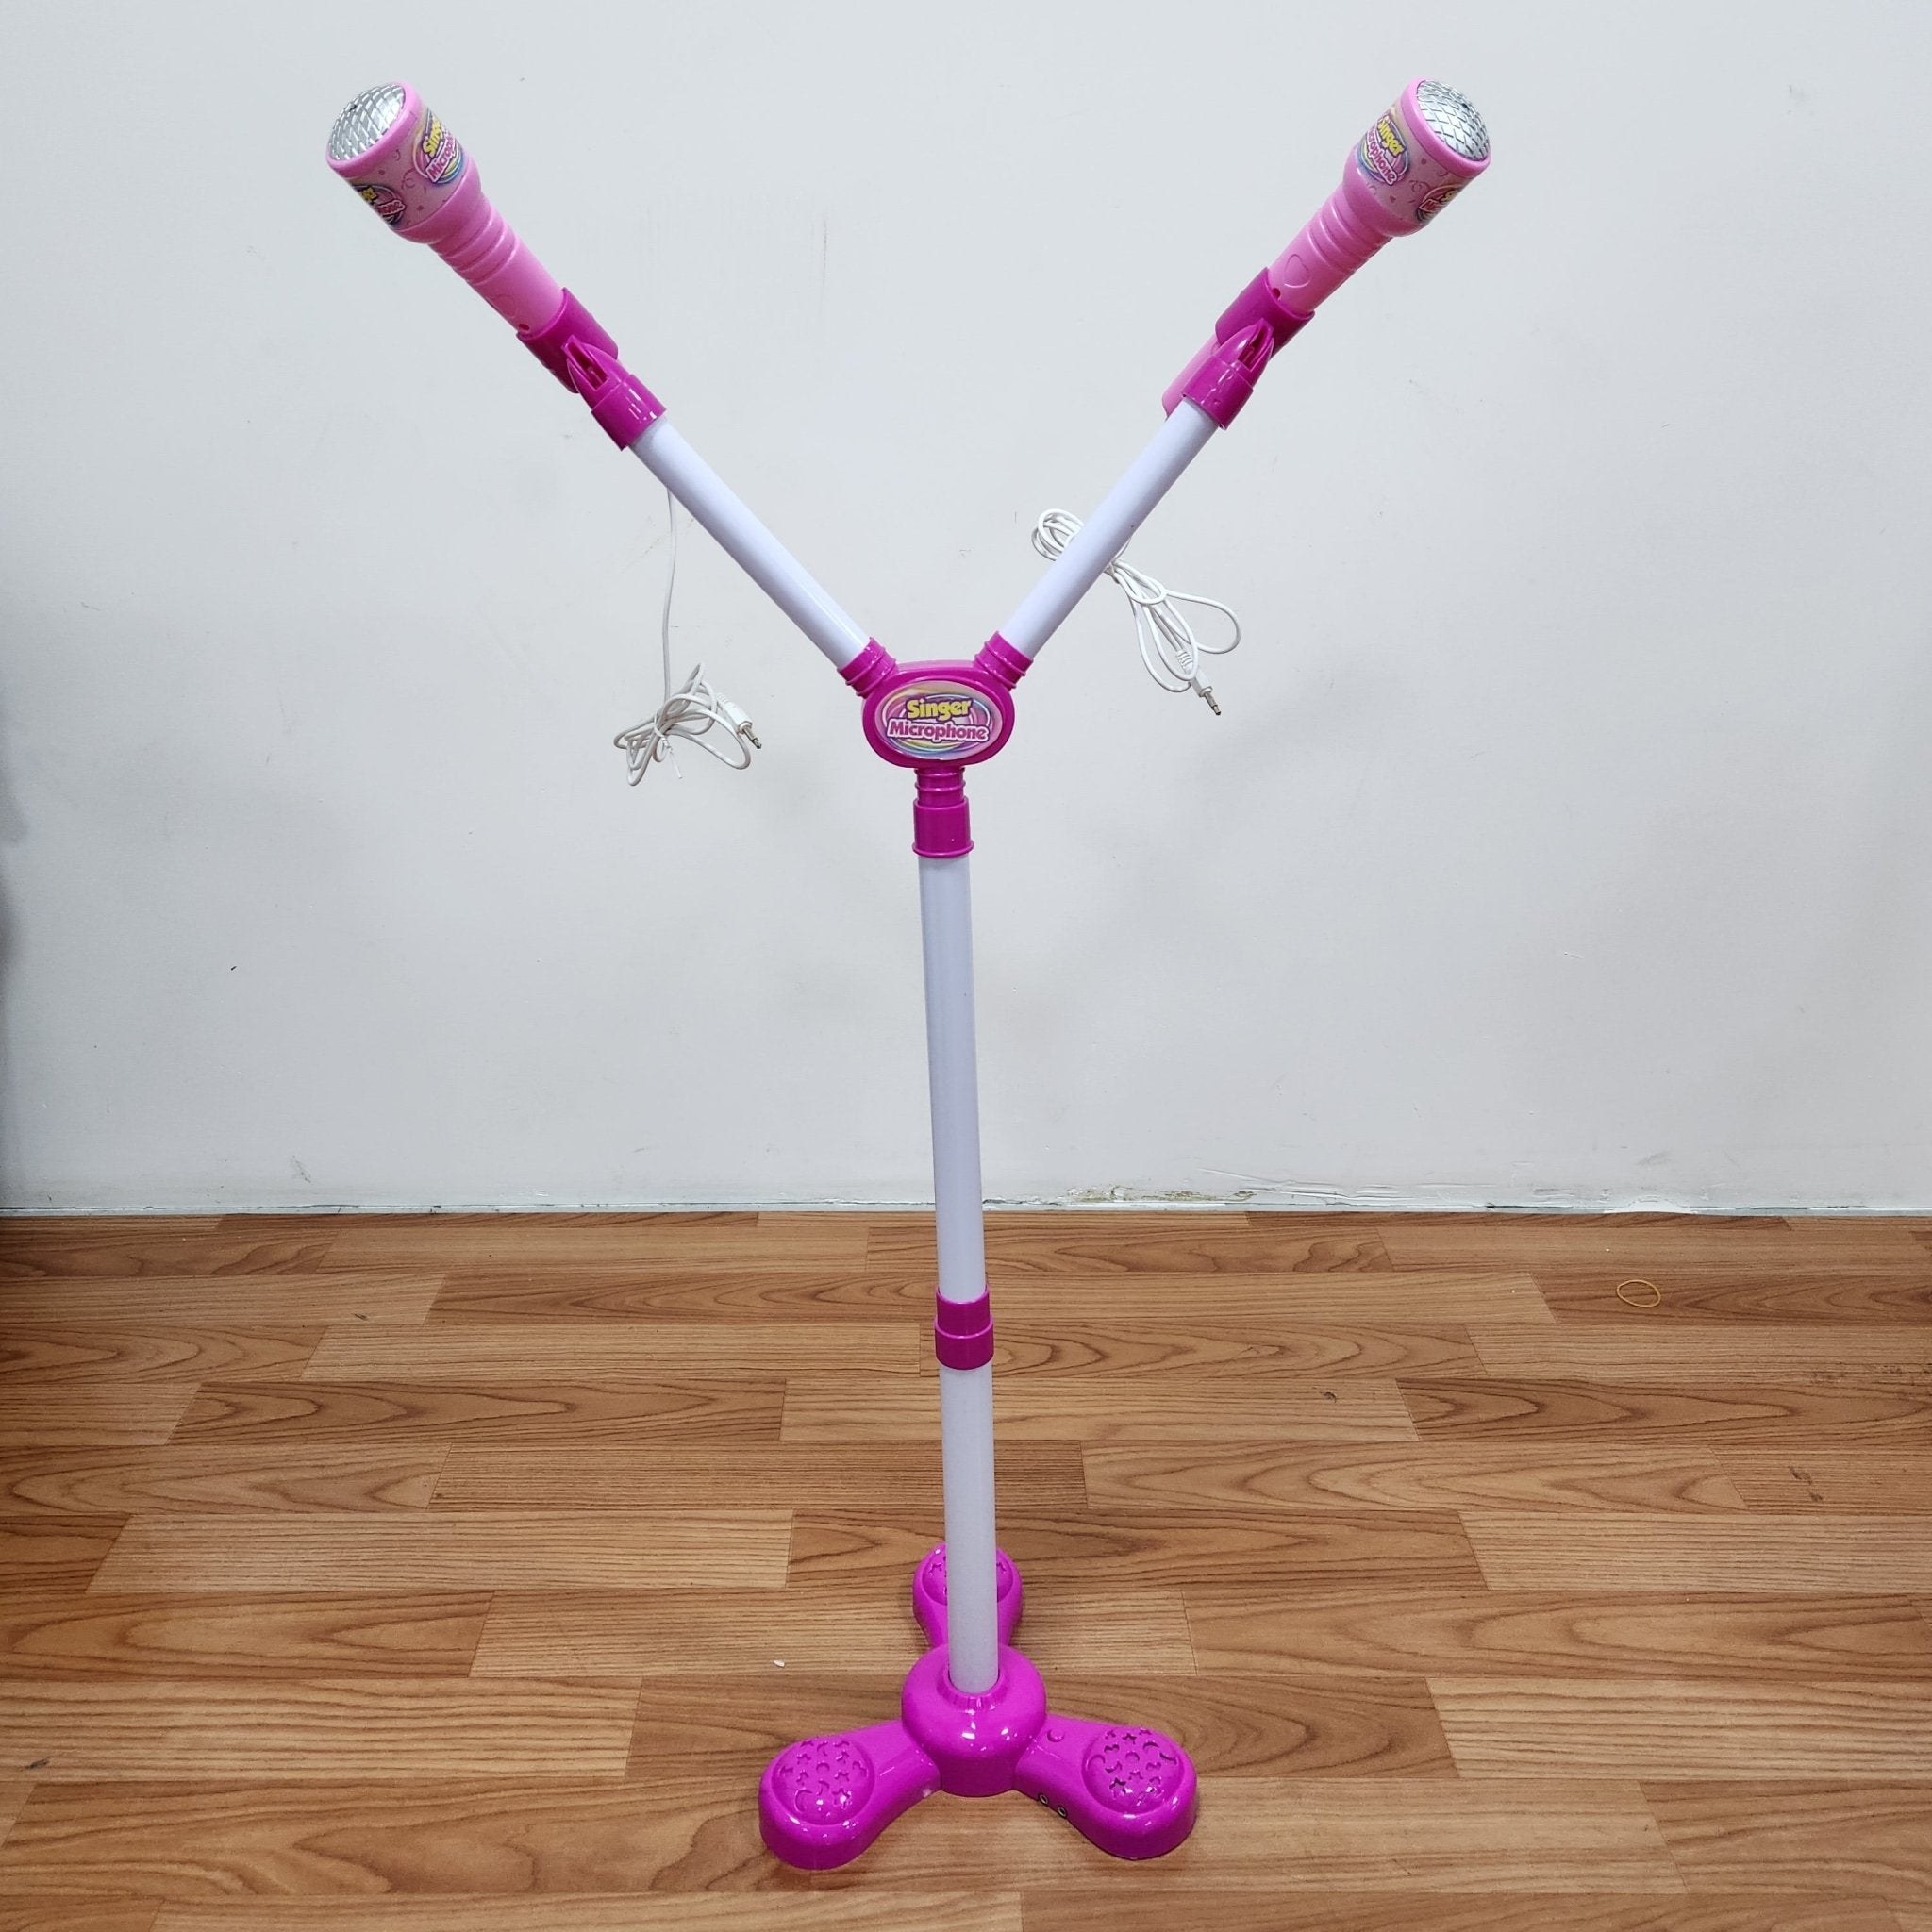 Microfone Duplo Infantil com Pedestal - Brinquedos VDH02804-01